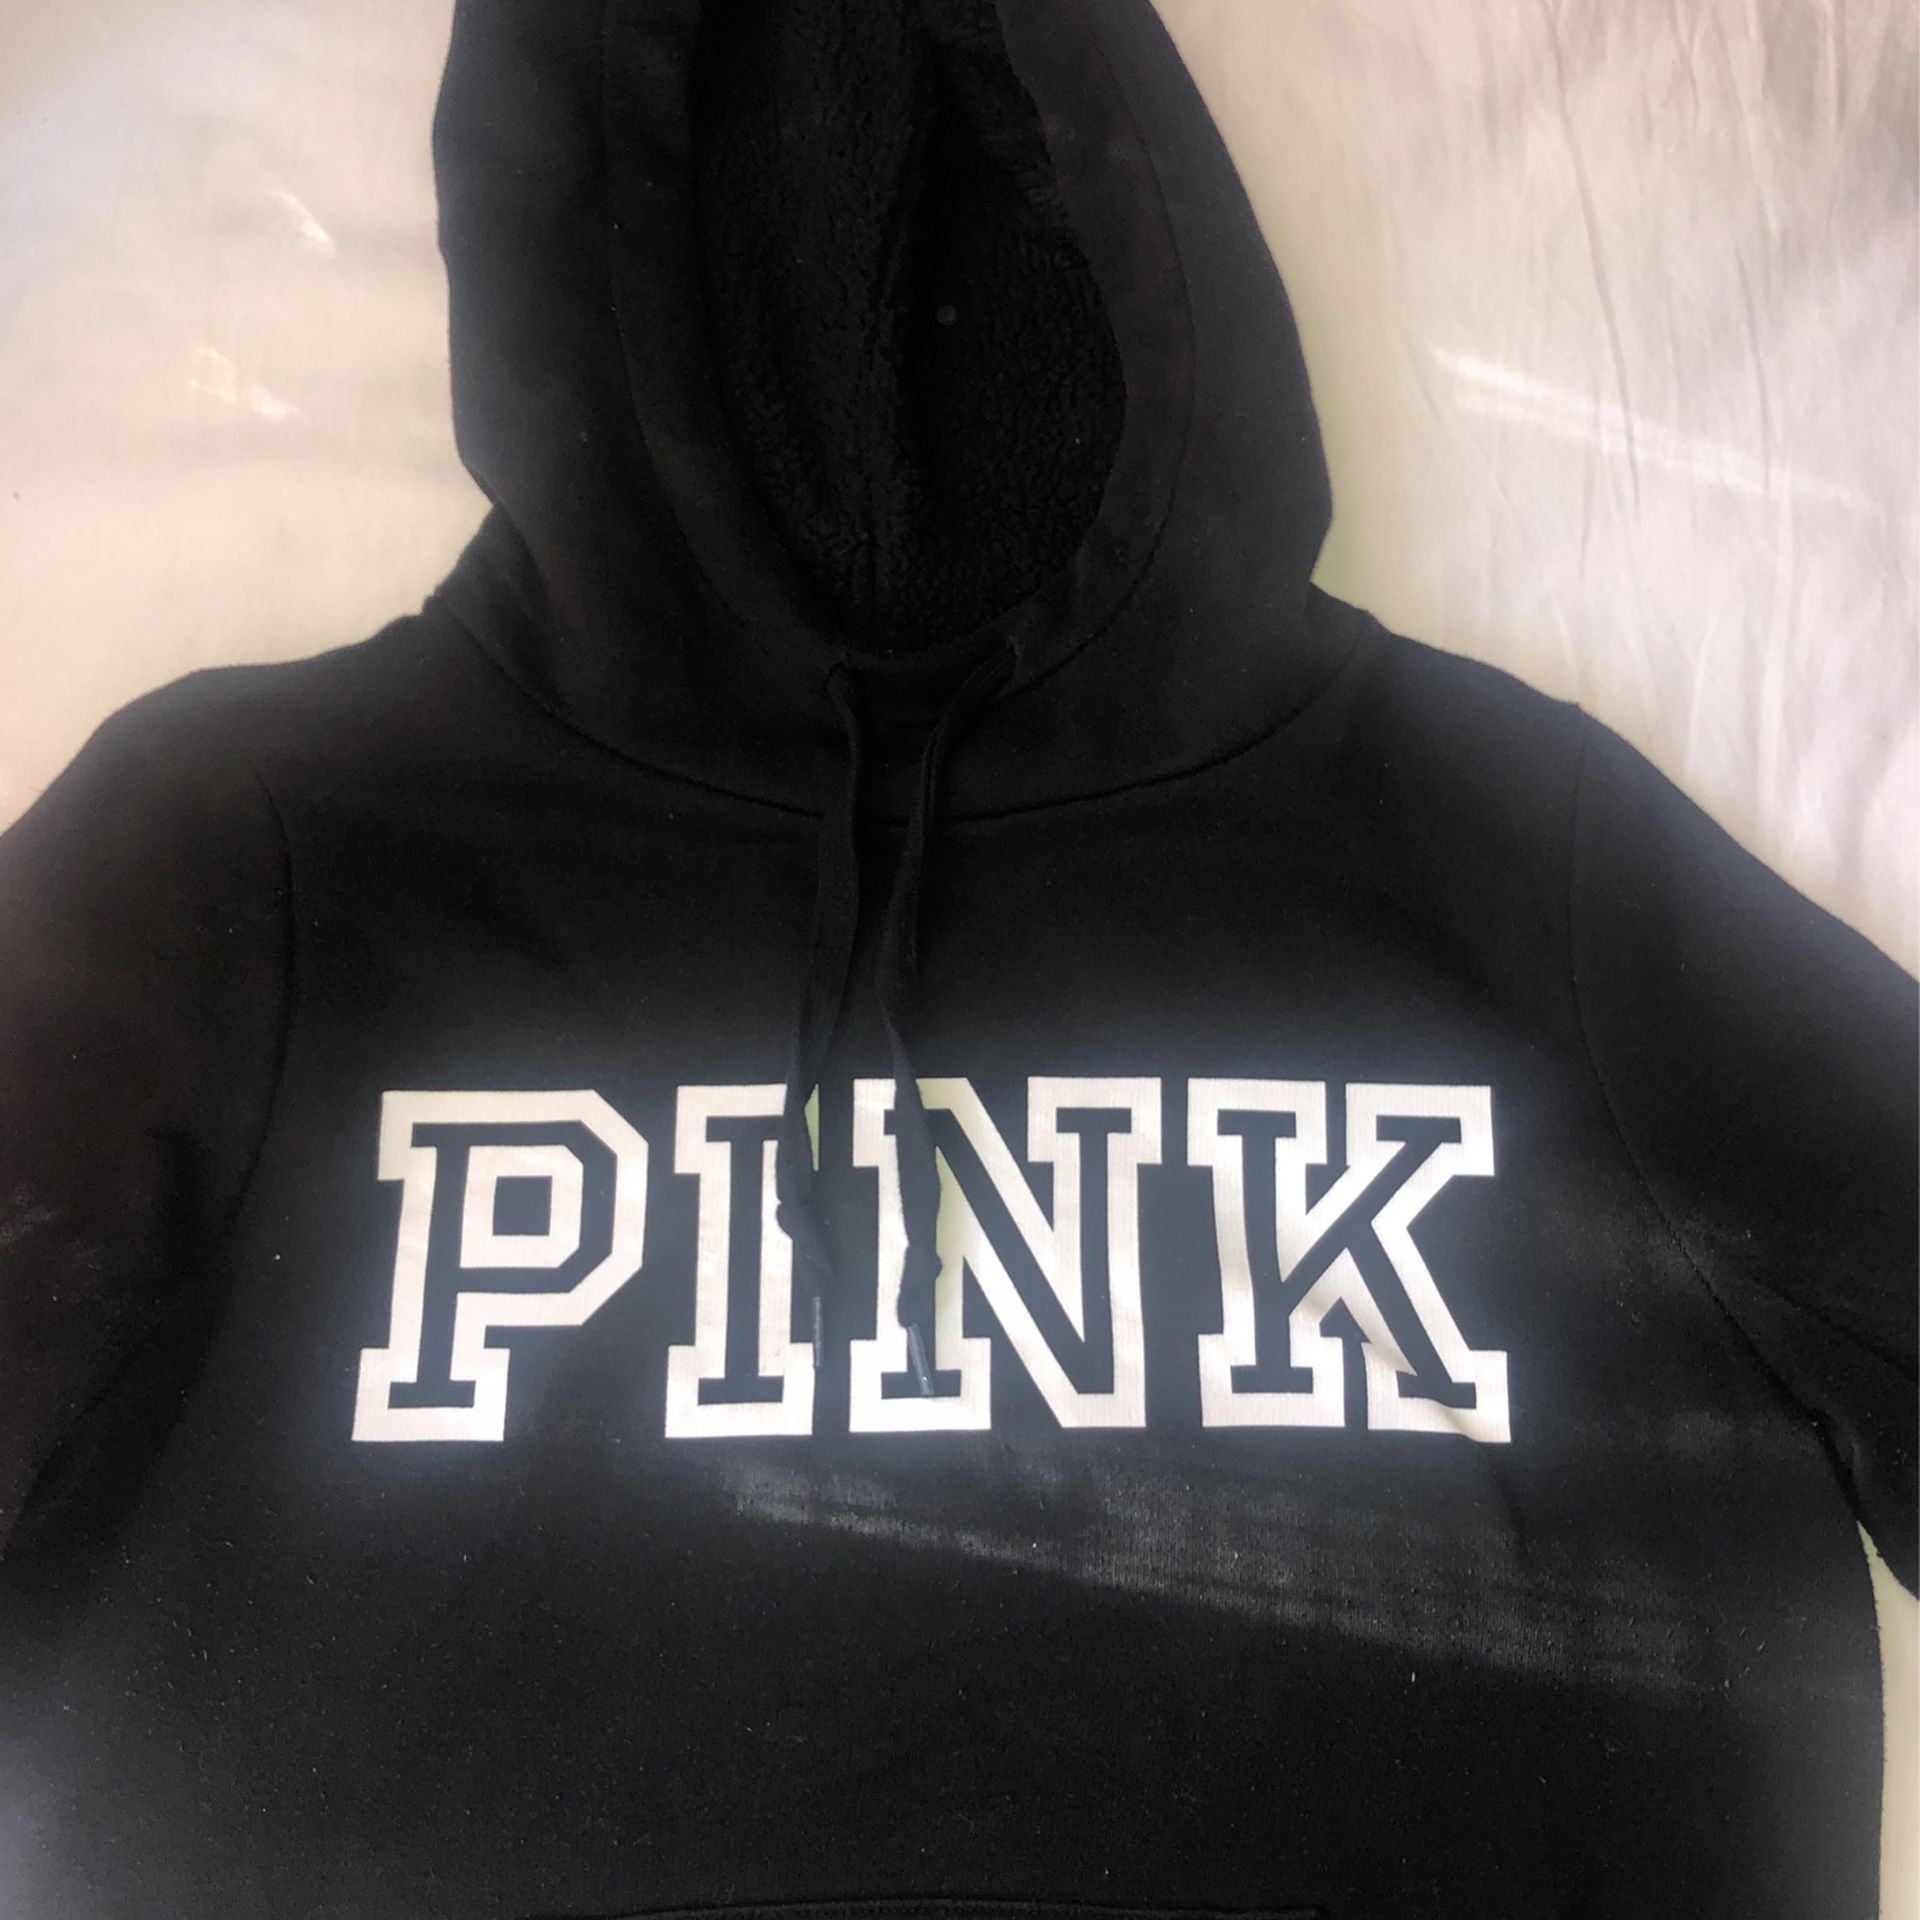 A black pink hoodie